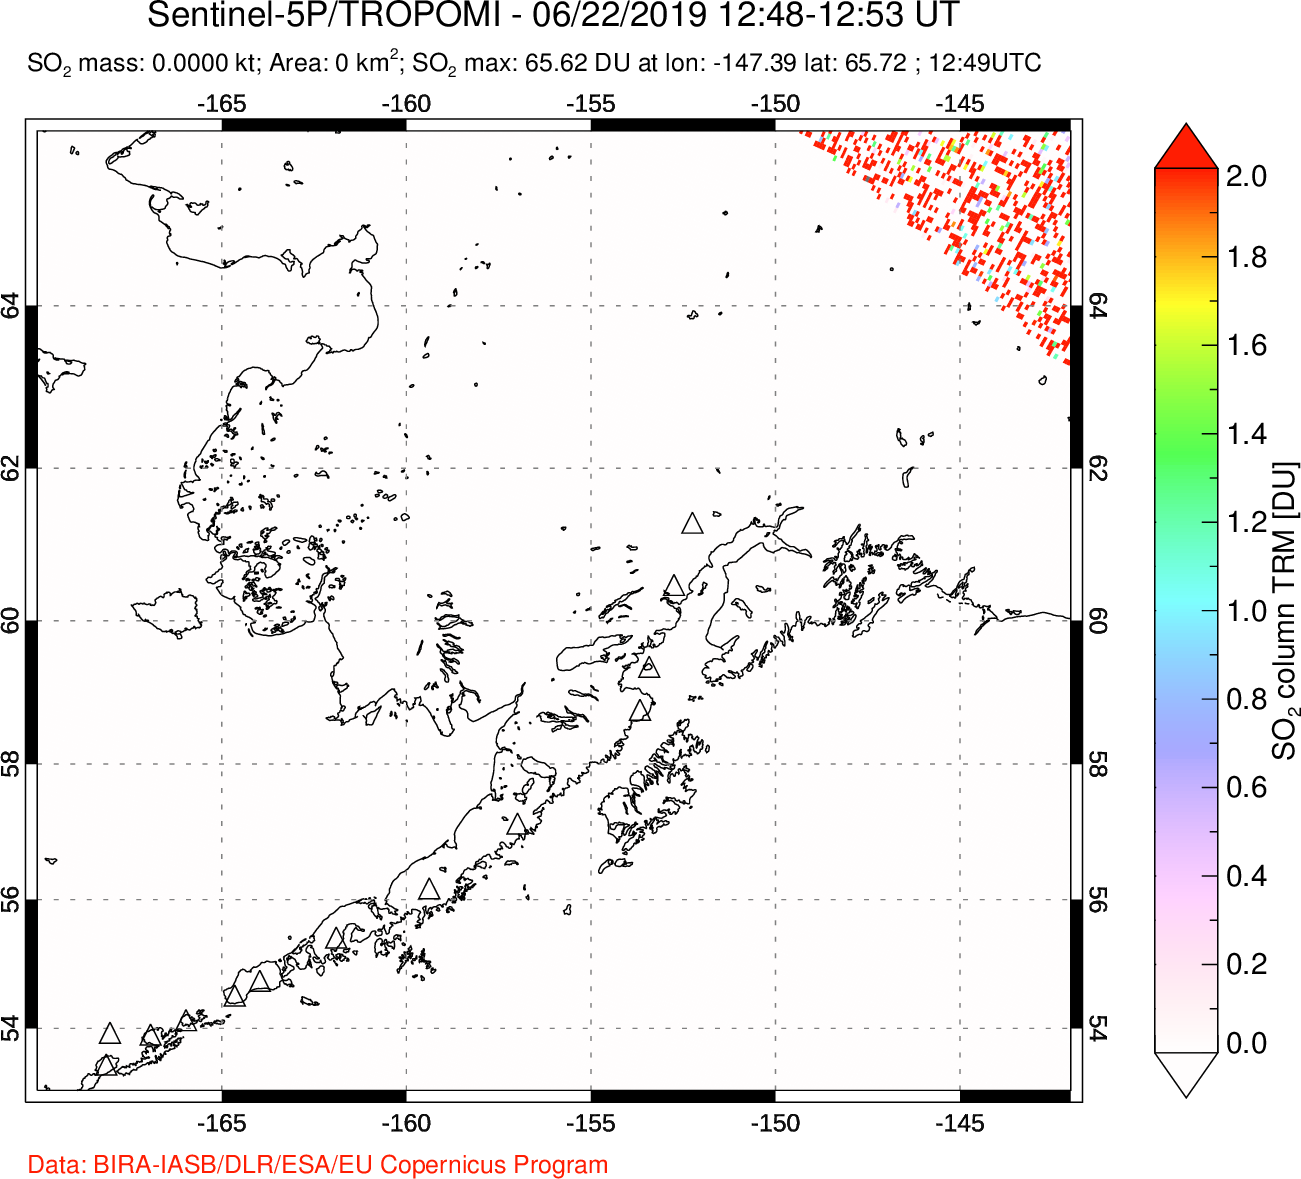 A sulfur dioxide image over Alaska, USA on Jun 22, 2019.